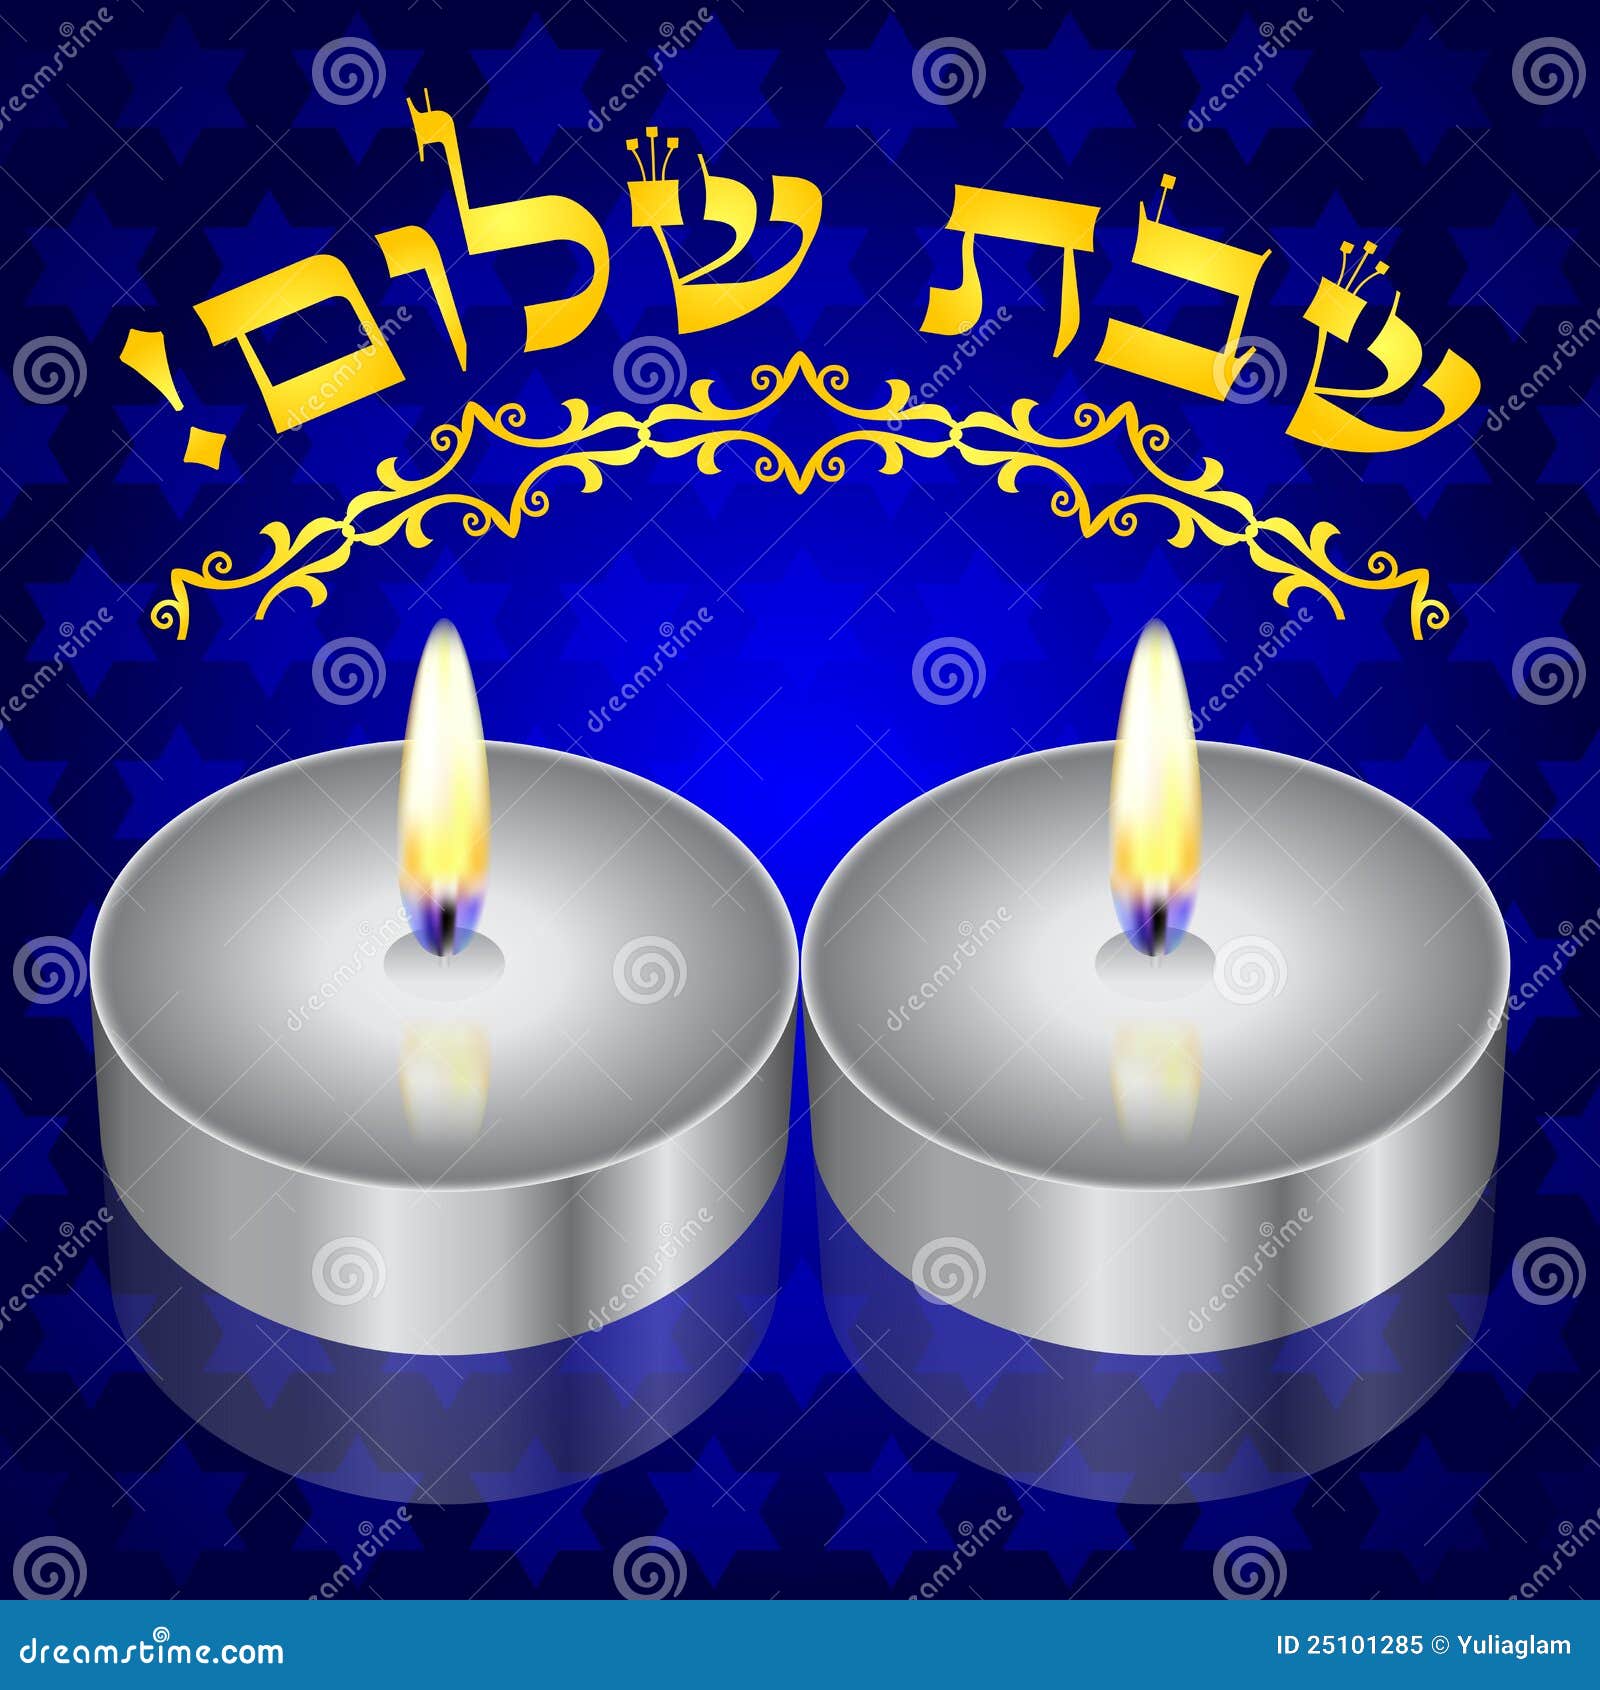 Shabbat Shalom! Hintergrund mit kiddush Kerzen